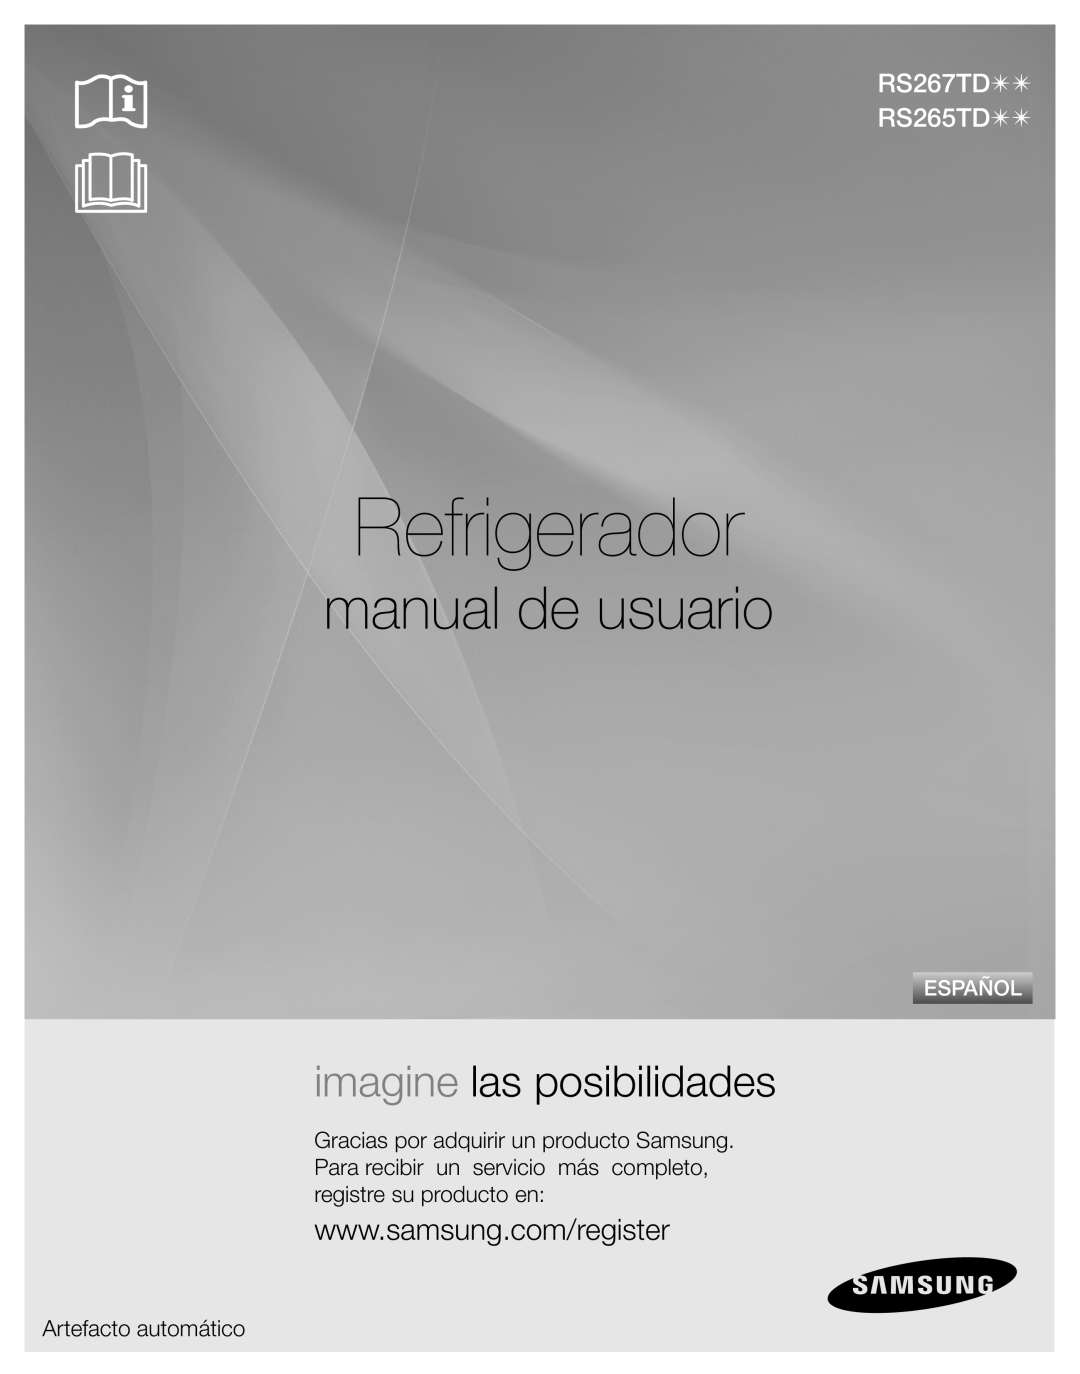 Samsung RS267TDPN Refrigerador, manual de usuario, imagine las posibilidades, RS267TD RS265TD, Artefacto automático 